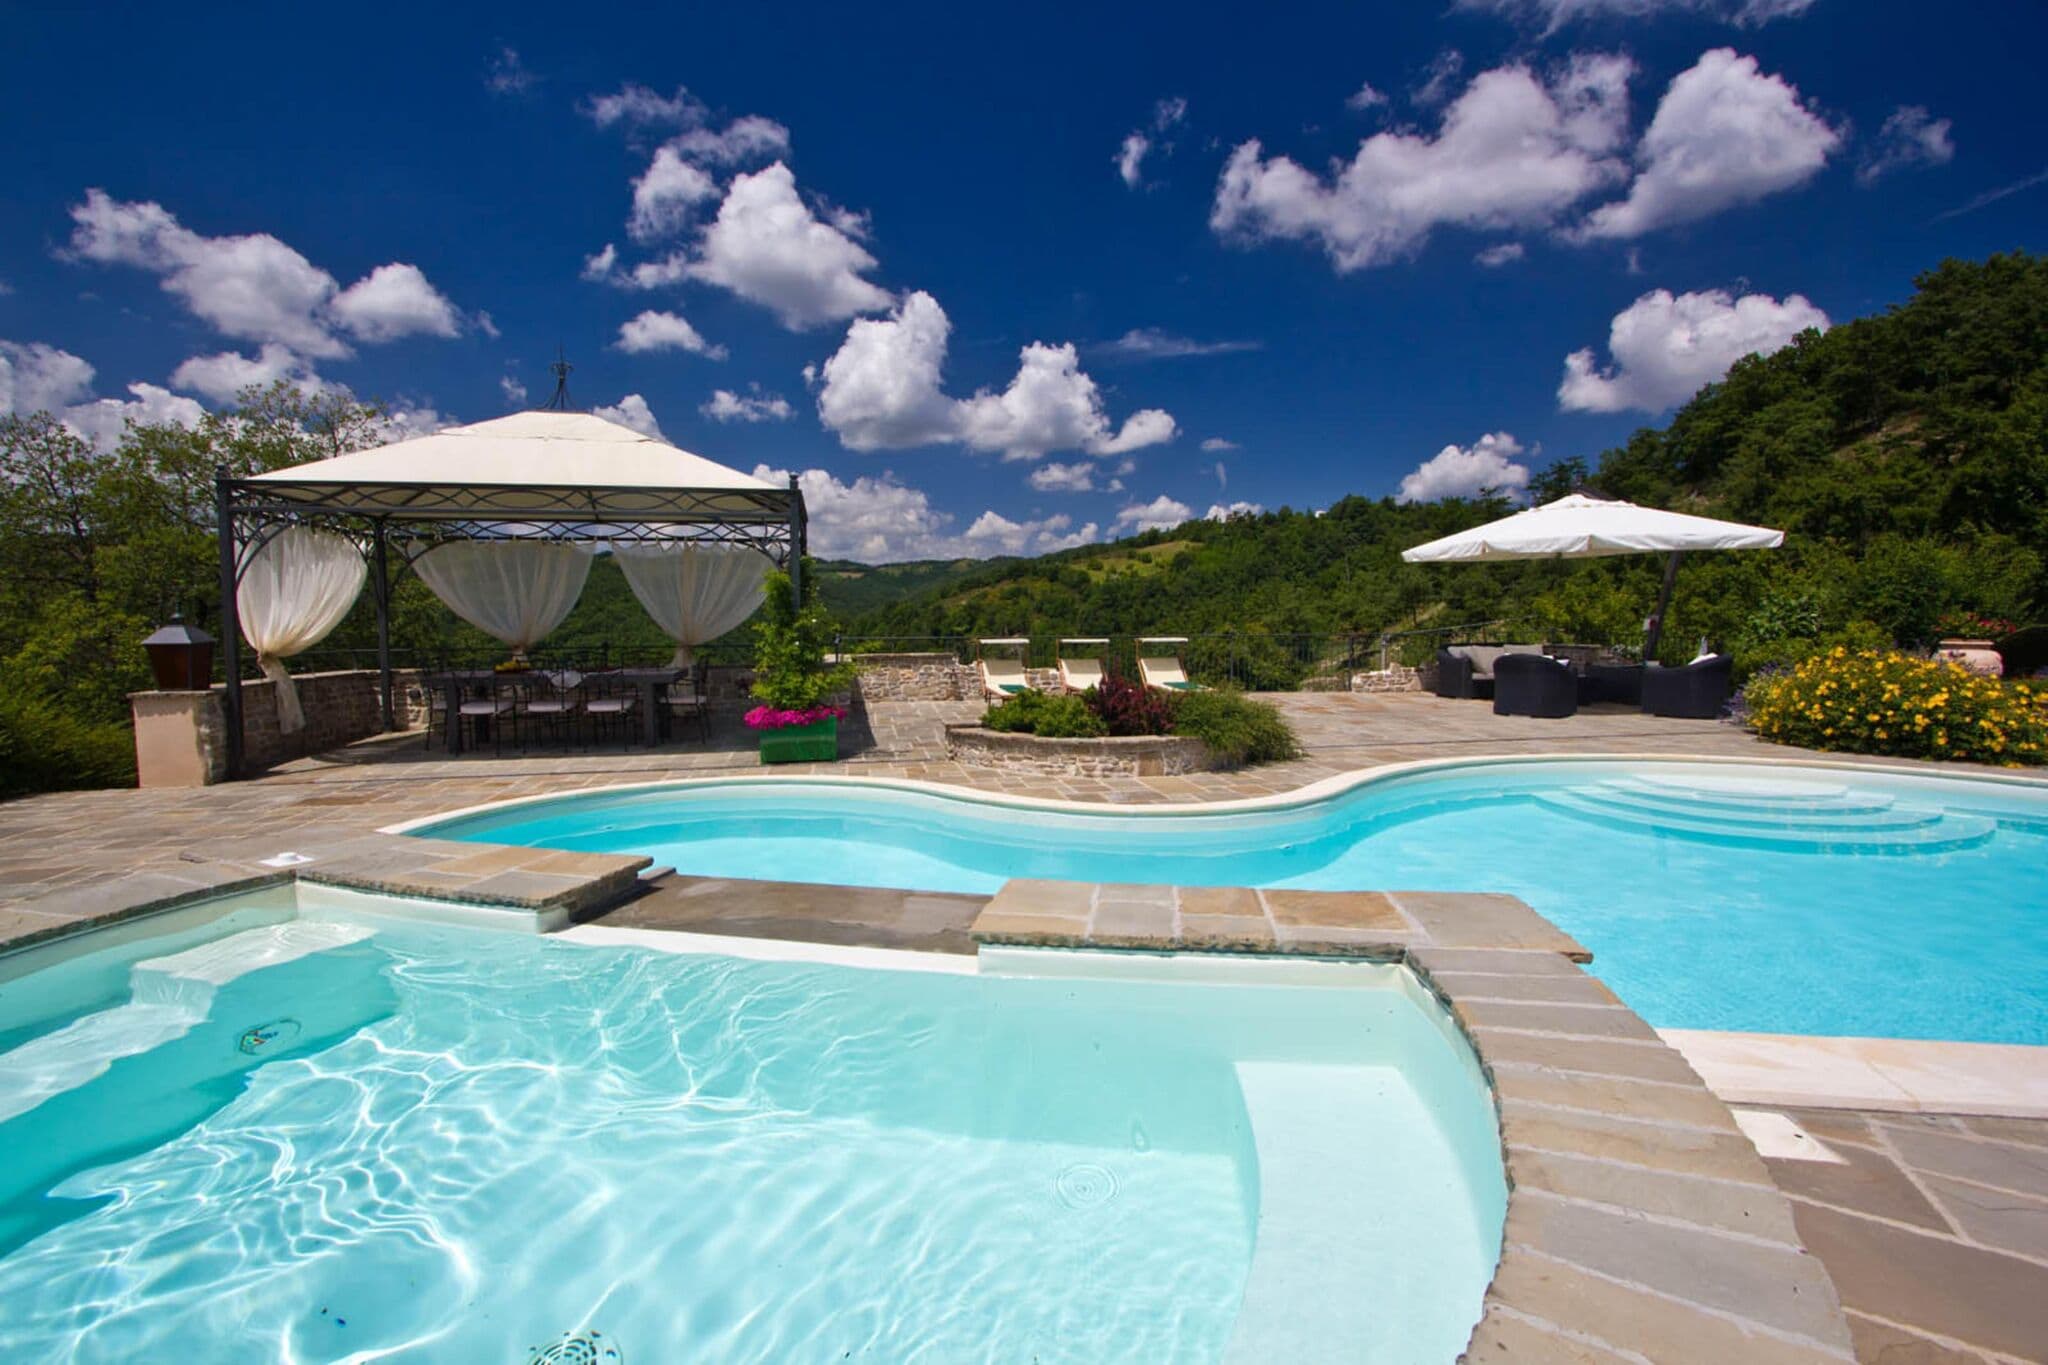 Pleasant Villa in Apecchio with Swimming Pool